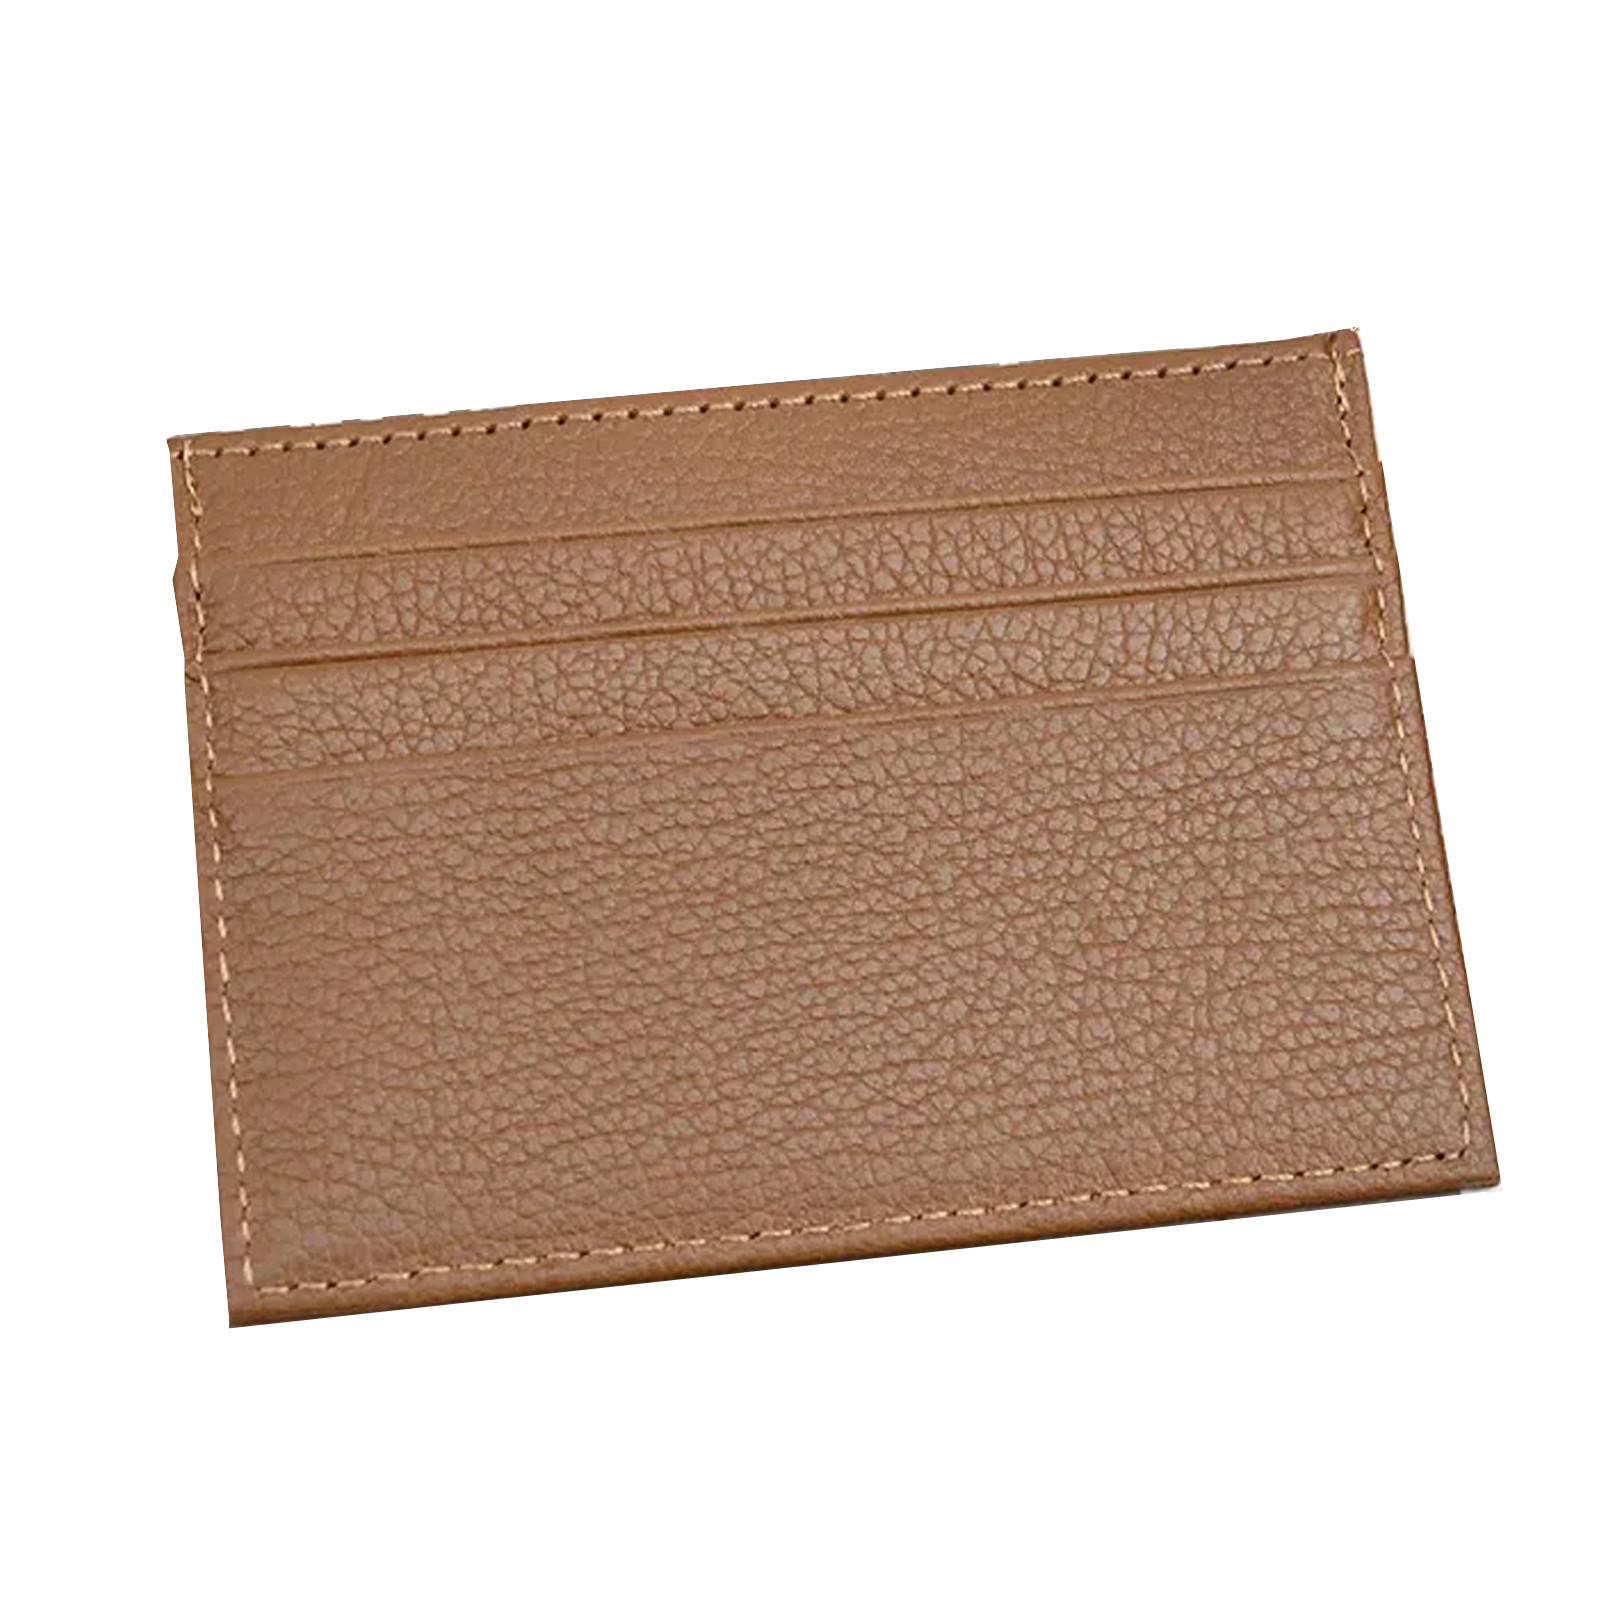 Wallet Tan - Italian Leather